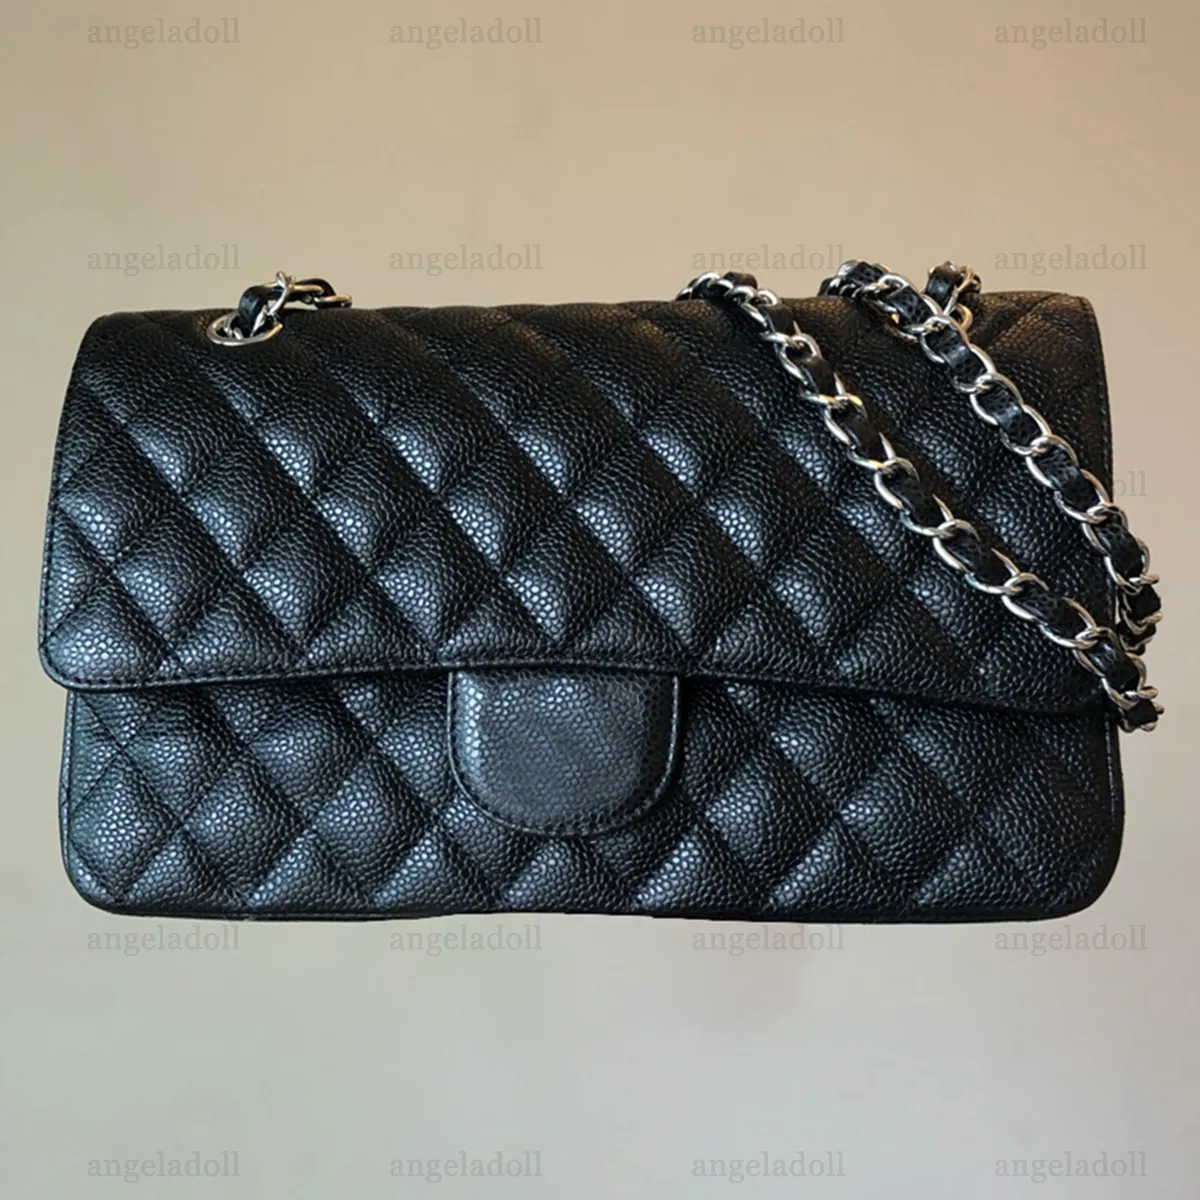 10a espelho de qualidade designer clássico saco de aba dupla de 25 cm bolsa feminina média de couro de couro de couro real bolsa preta de bolsa colada crossbody saco de caixa de corrente